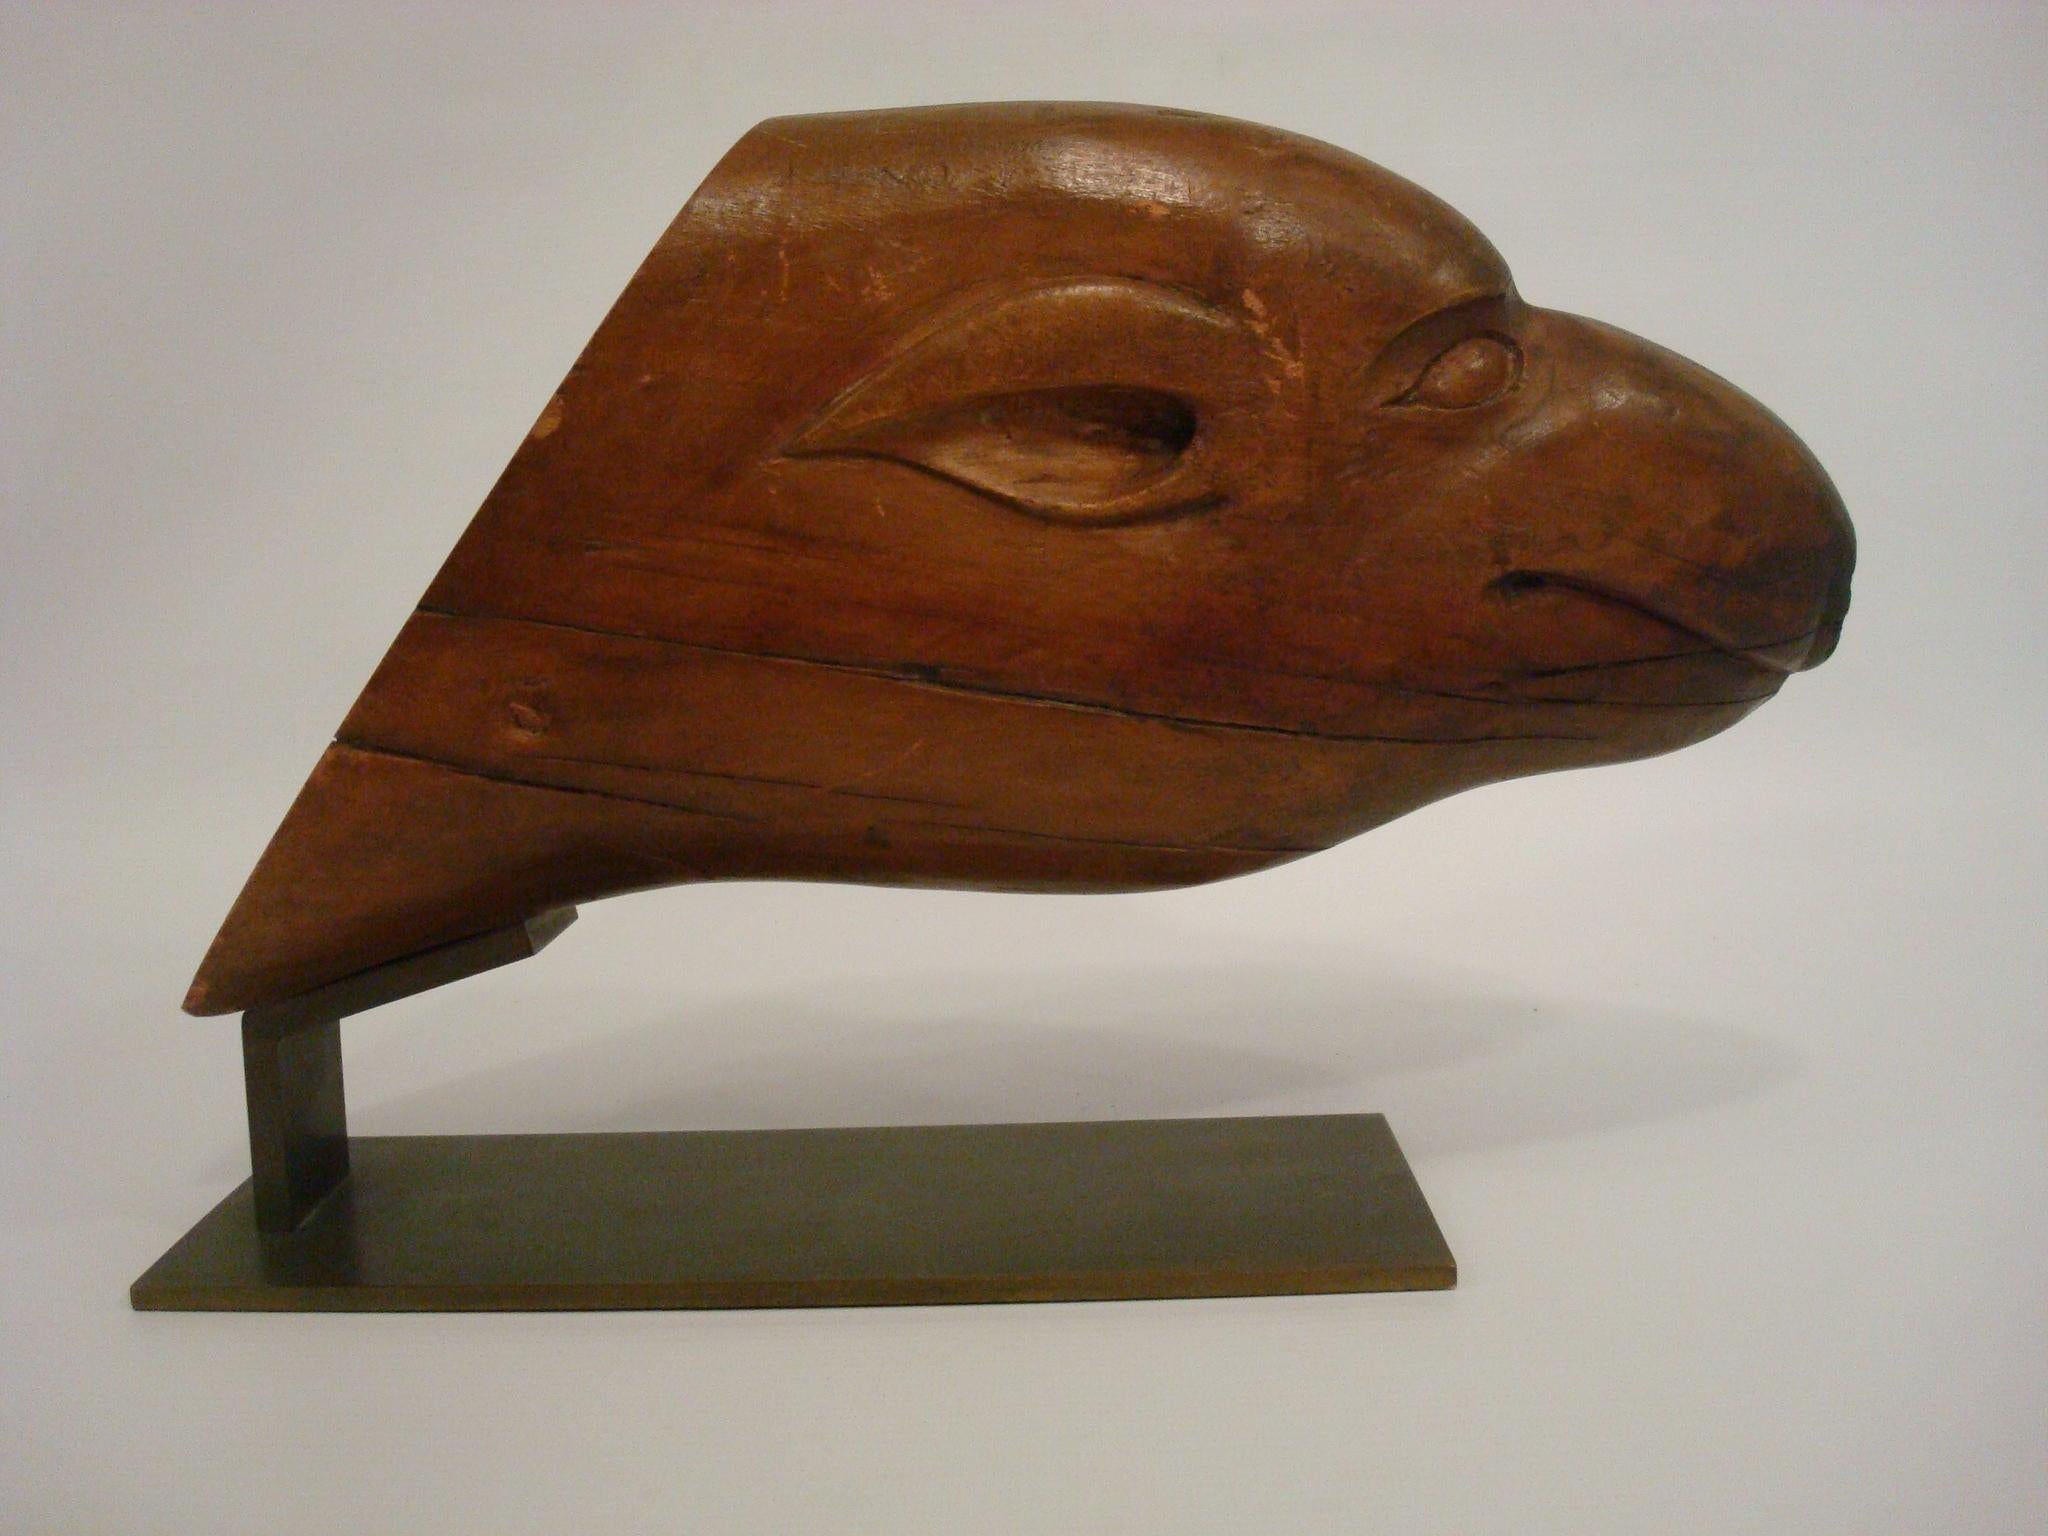 Volkskunstskulptur des Kopfes eines Seehundes. Südamerika 1930er Jahre.
Der Kopf ist auf einen Messingsockel montiert, um ihn ausstellen zu können.
Der Kopf hat mehrere Risse, wie Sie auf den Bildern sehen können. Insgesamt sehr schöne